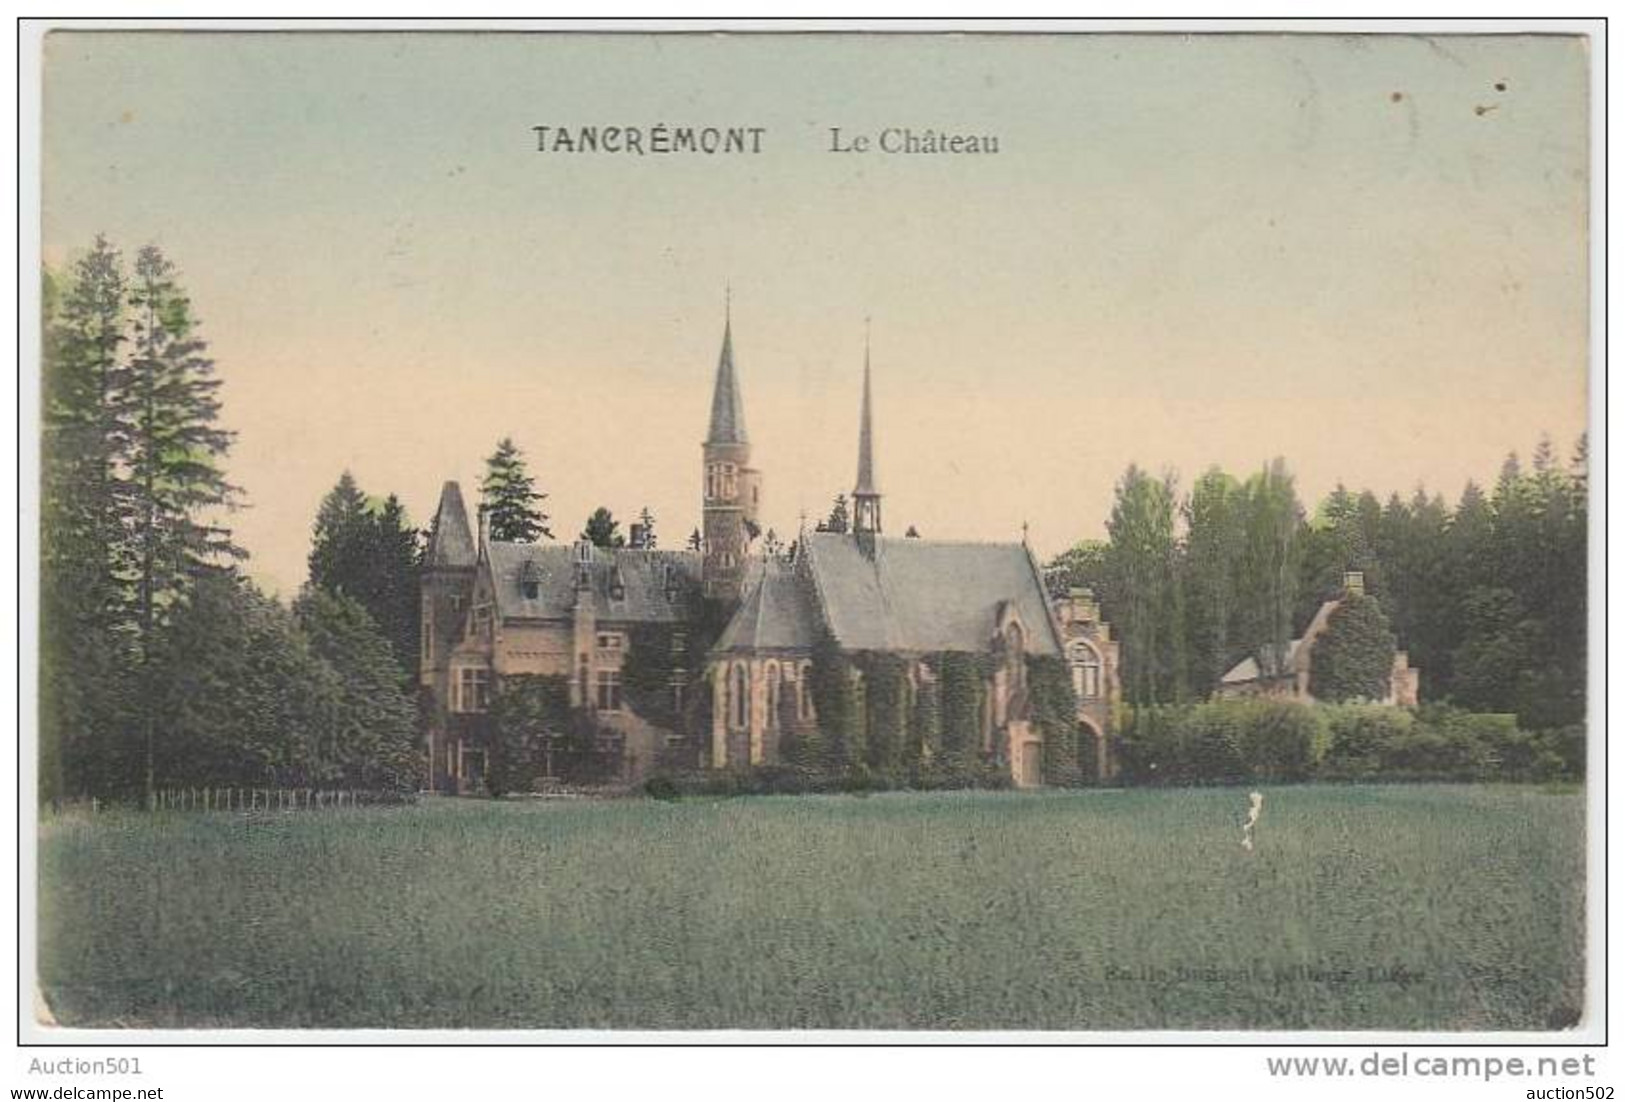 17800g CHATEAU - Tancrémont - 1911 - Pepinster